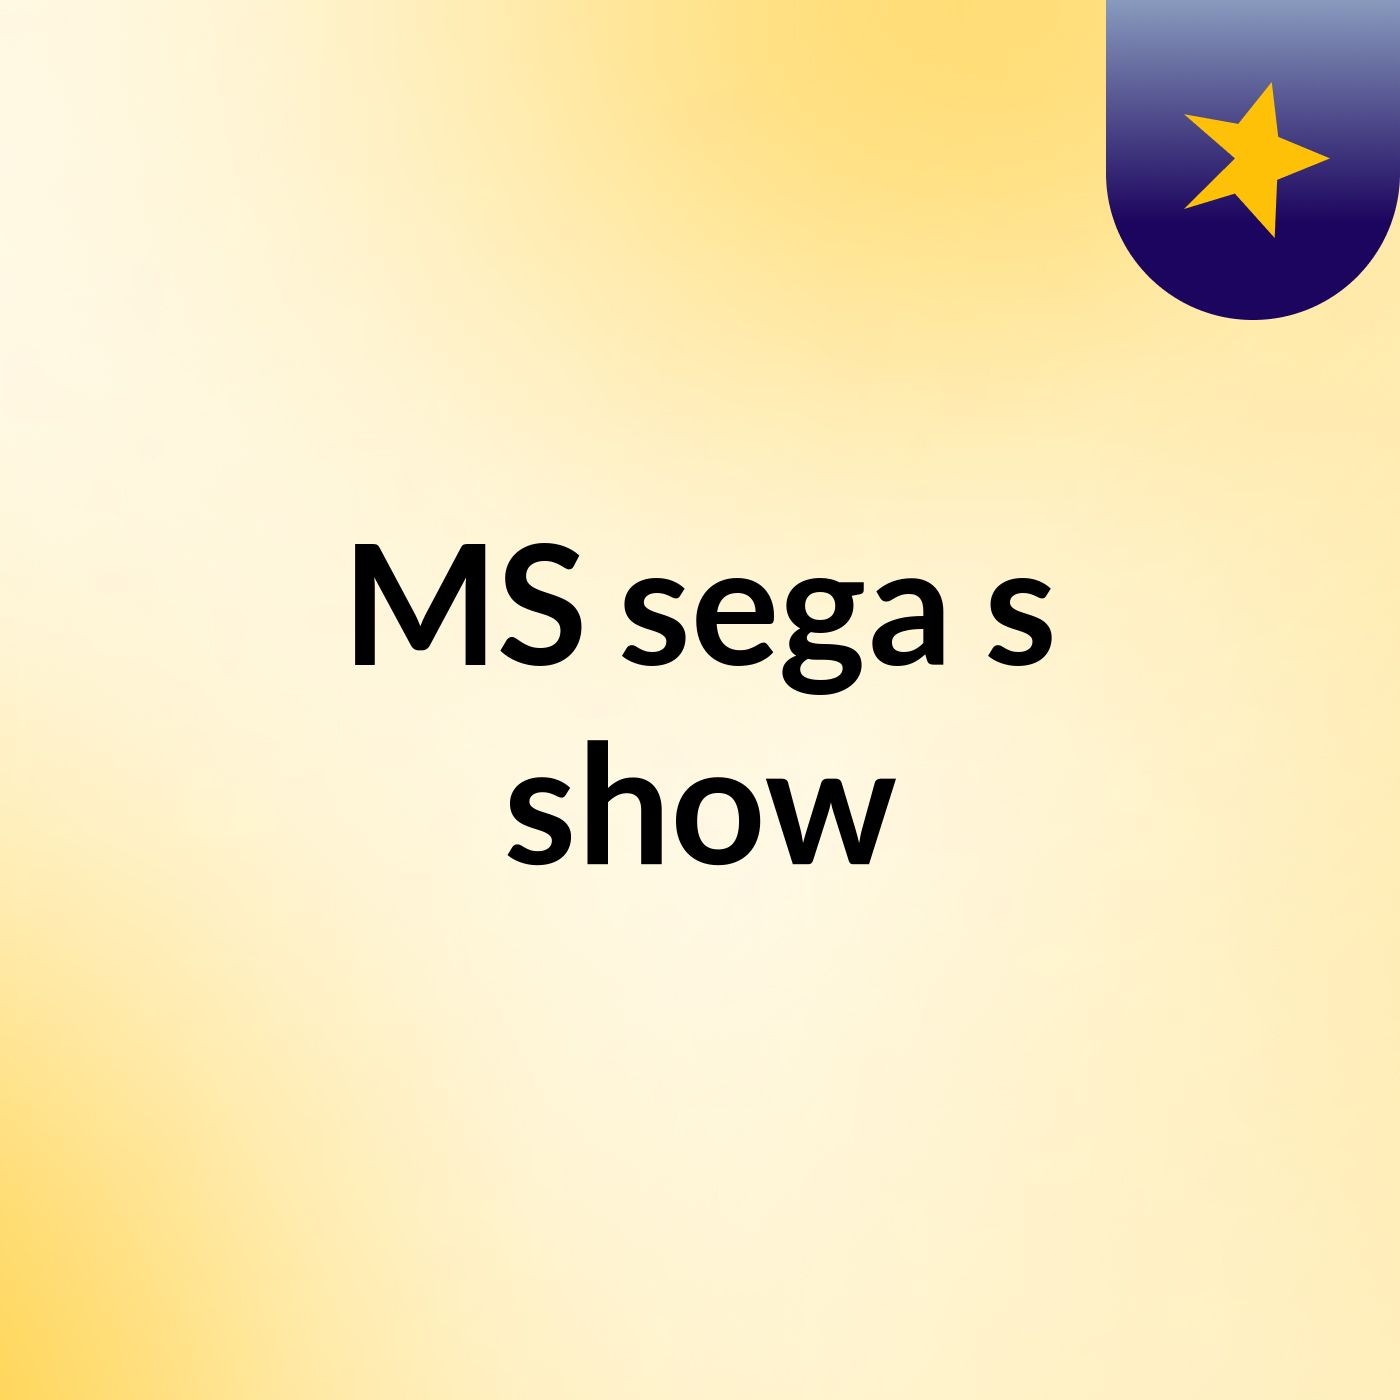 MS sega's show